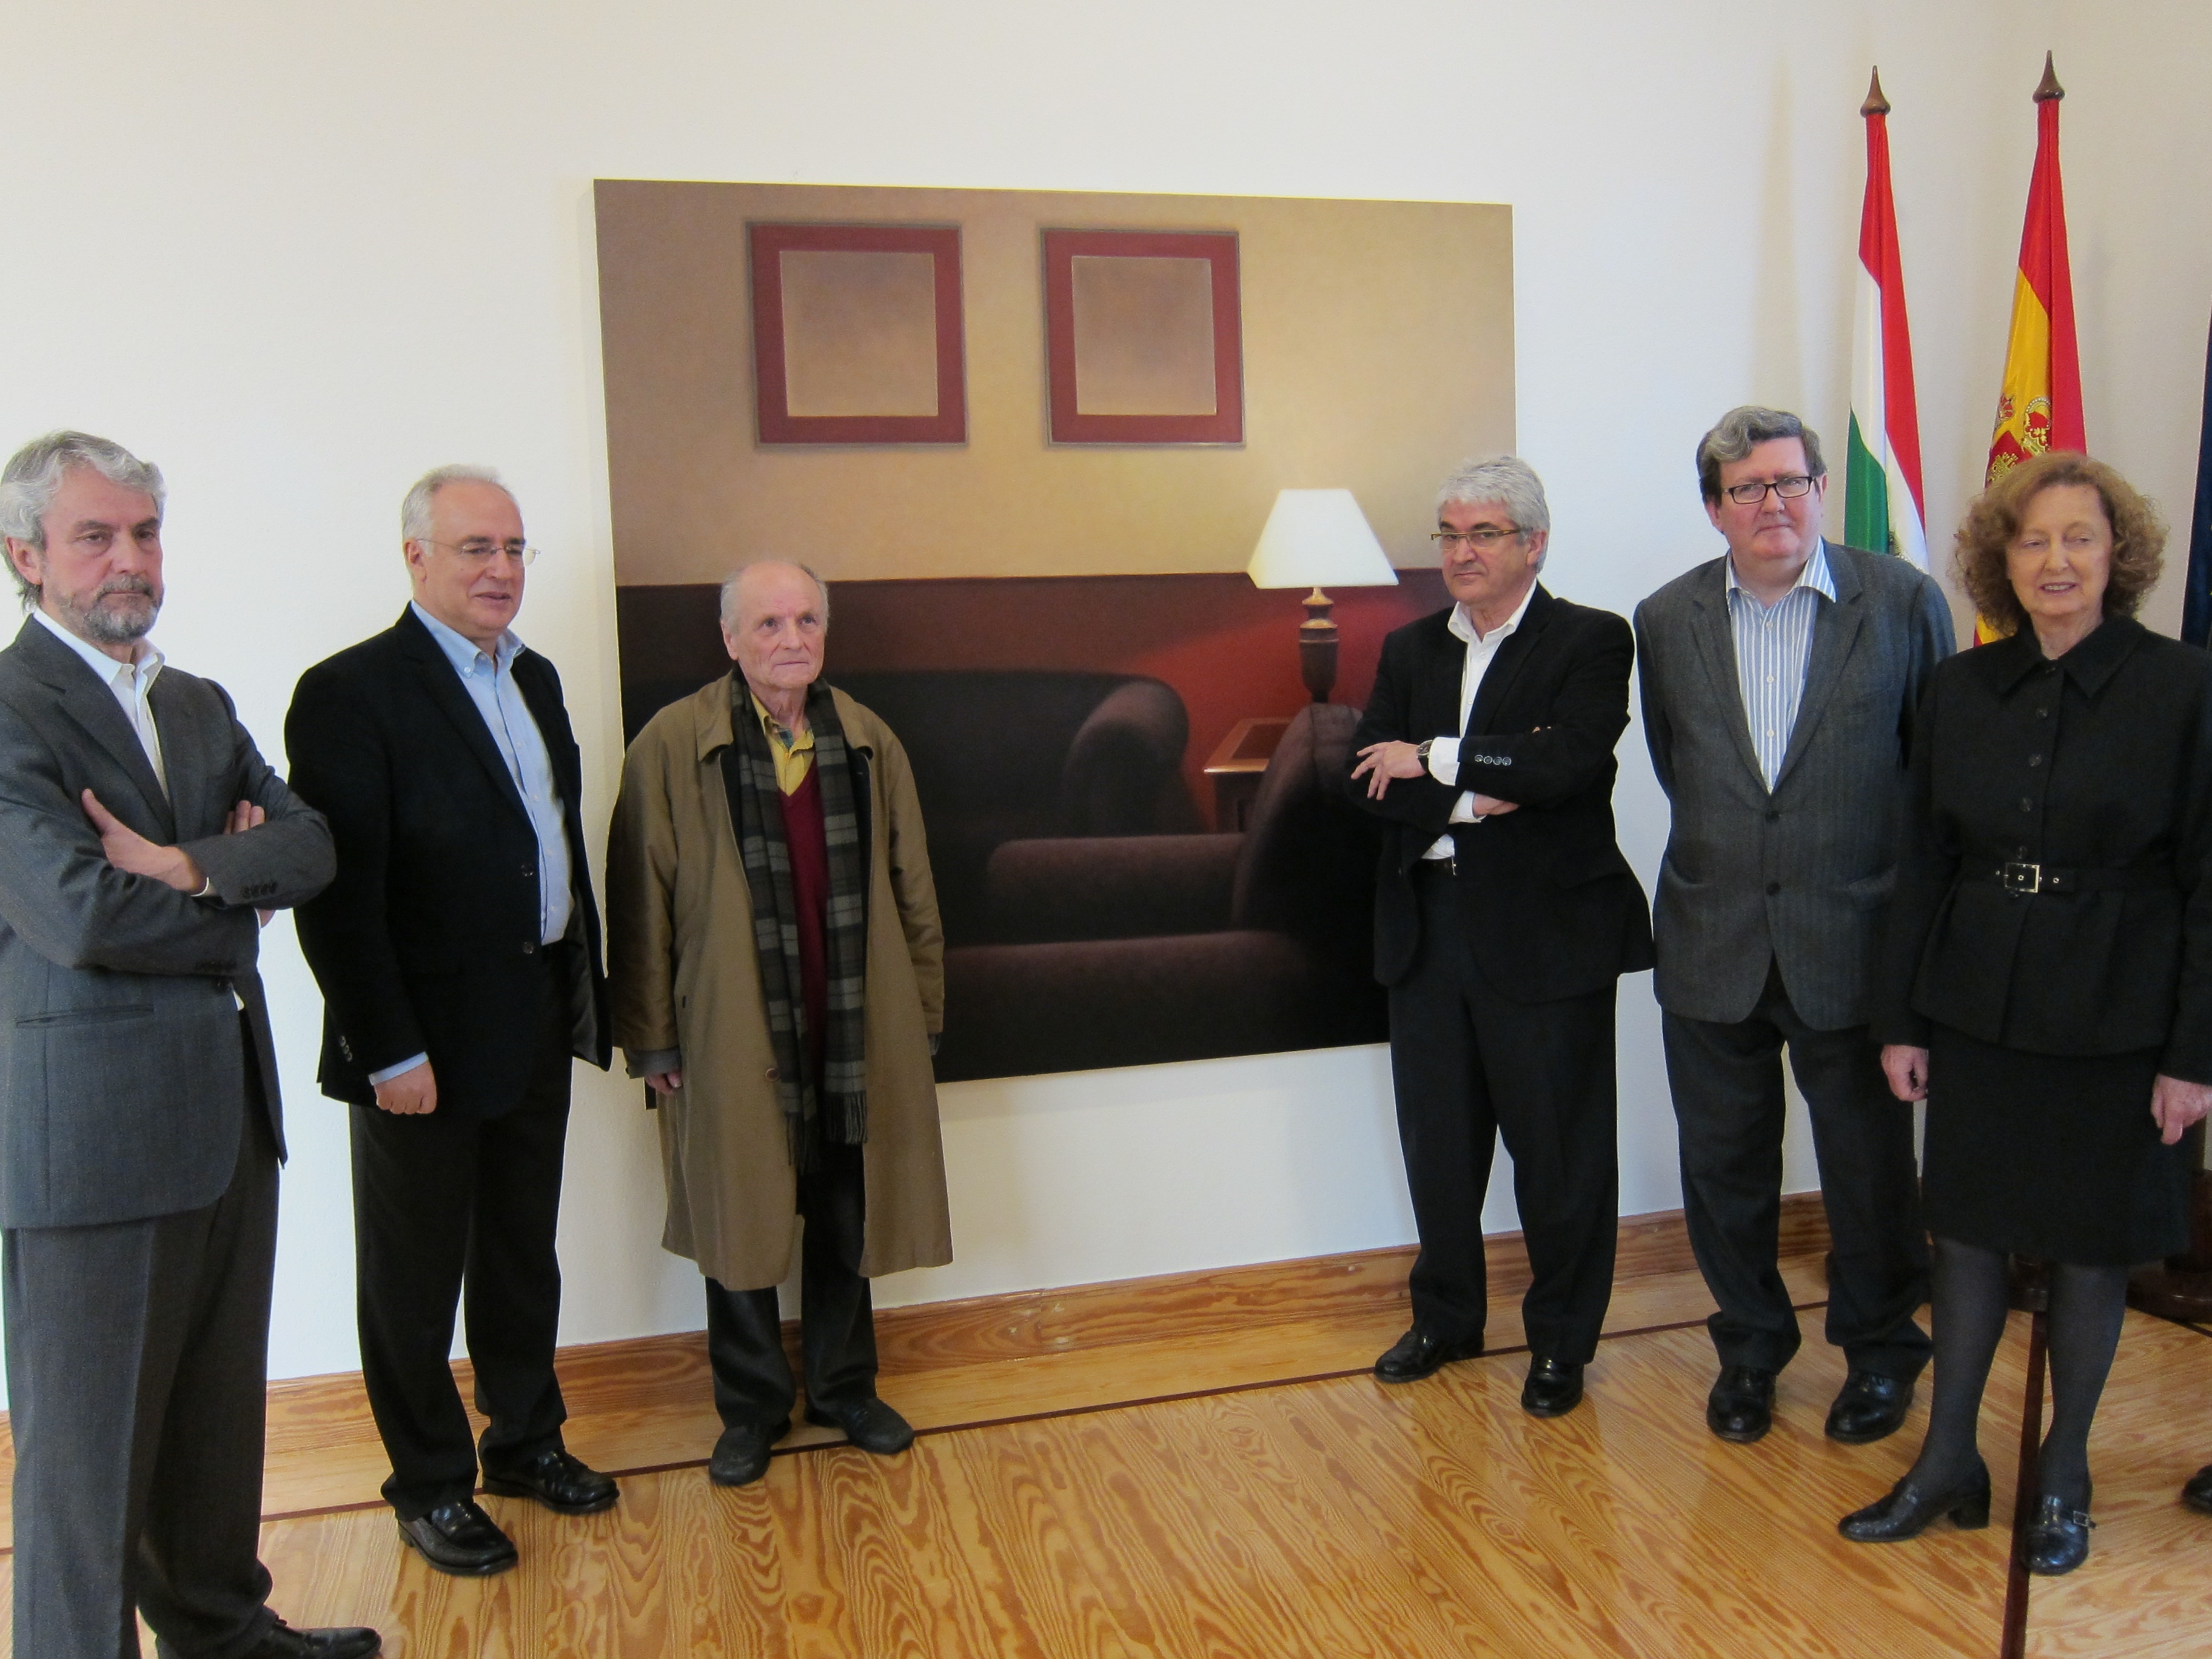 El artista Gonzalo Sicre, ganador del VIII Certamen Nacional de Pintura del Parlamento de La Rioja 2013